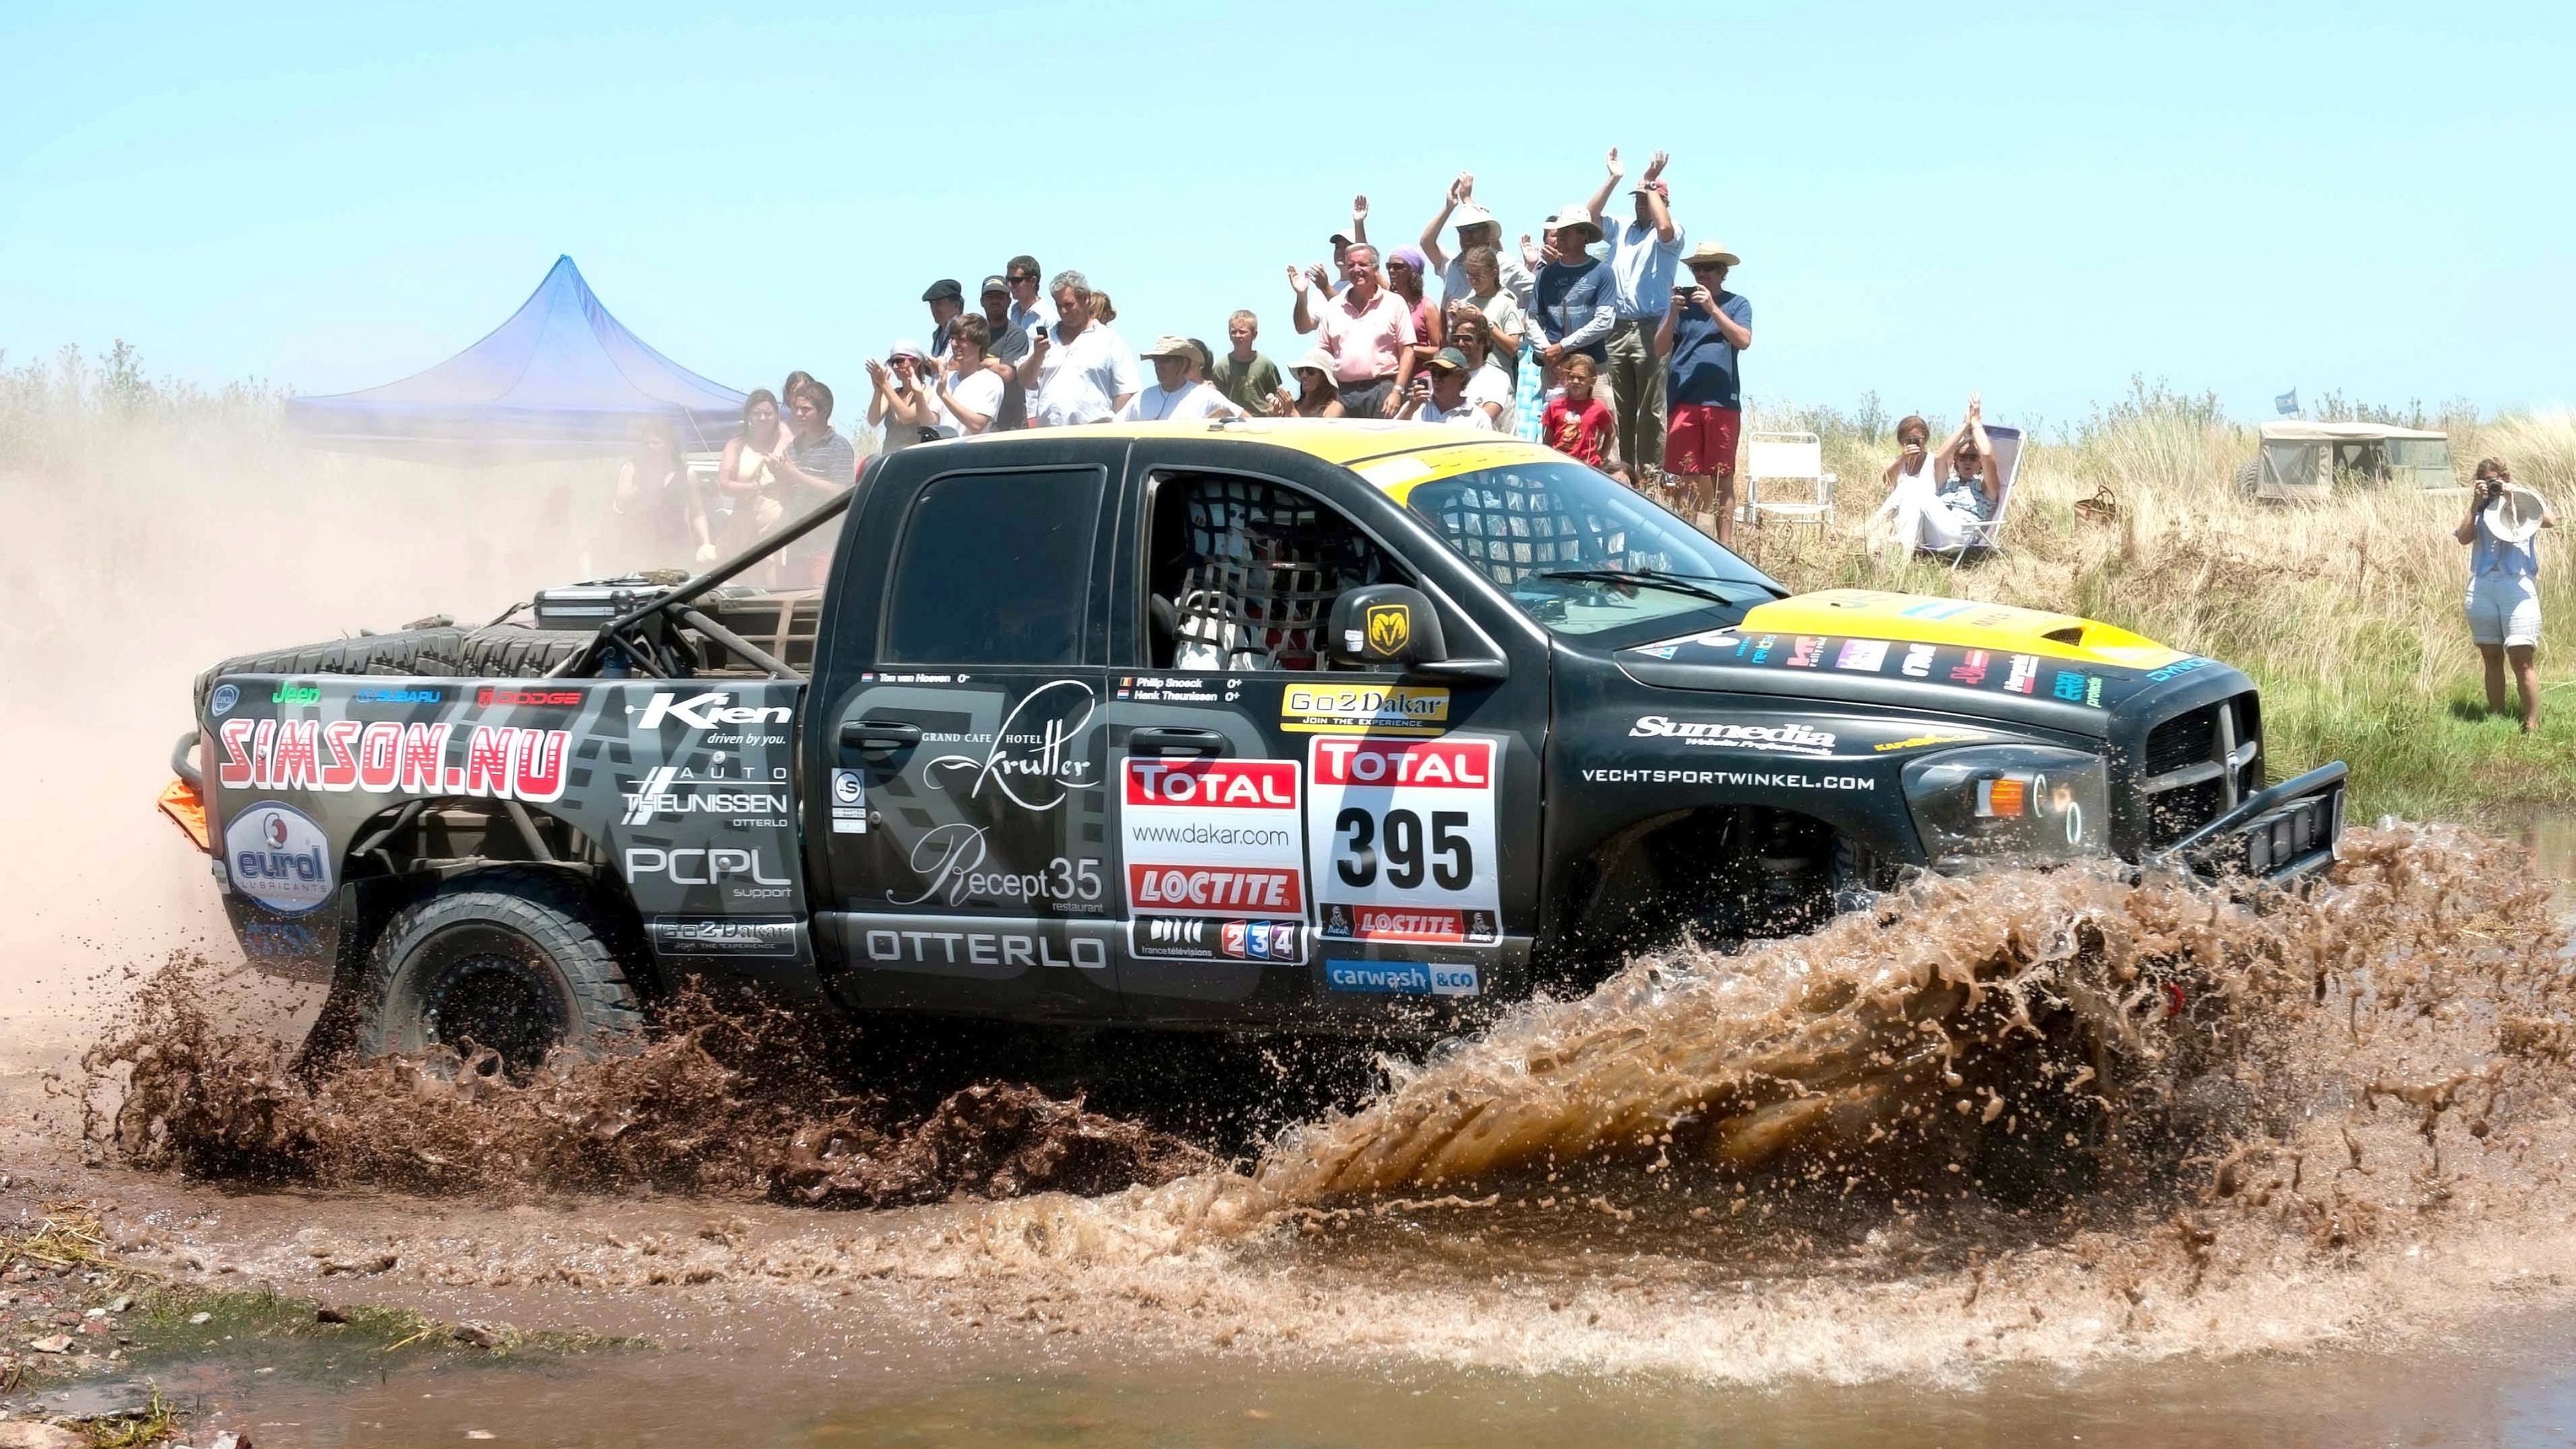 Dakar rally wallpapers, Ultra HD, Desktop backgrounds, Sports enthusiasts, 3840x2160 4K Desktop